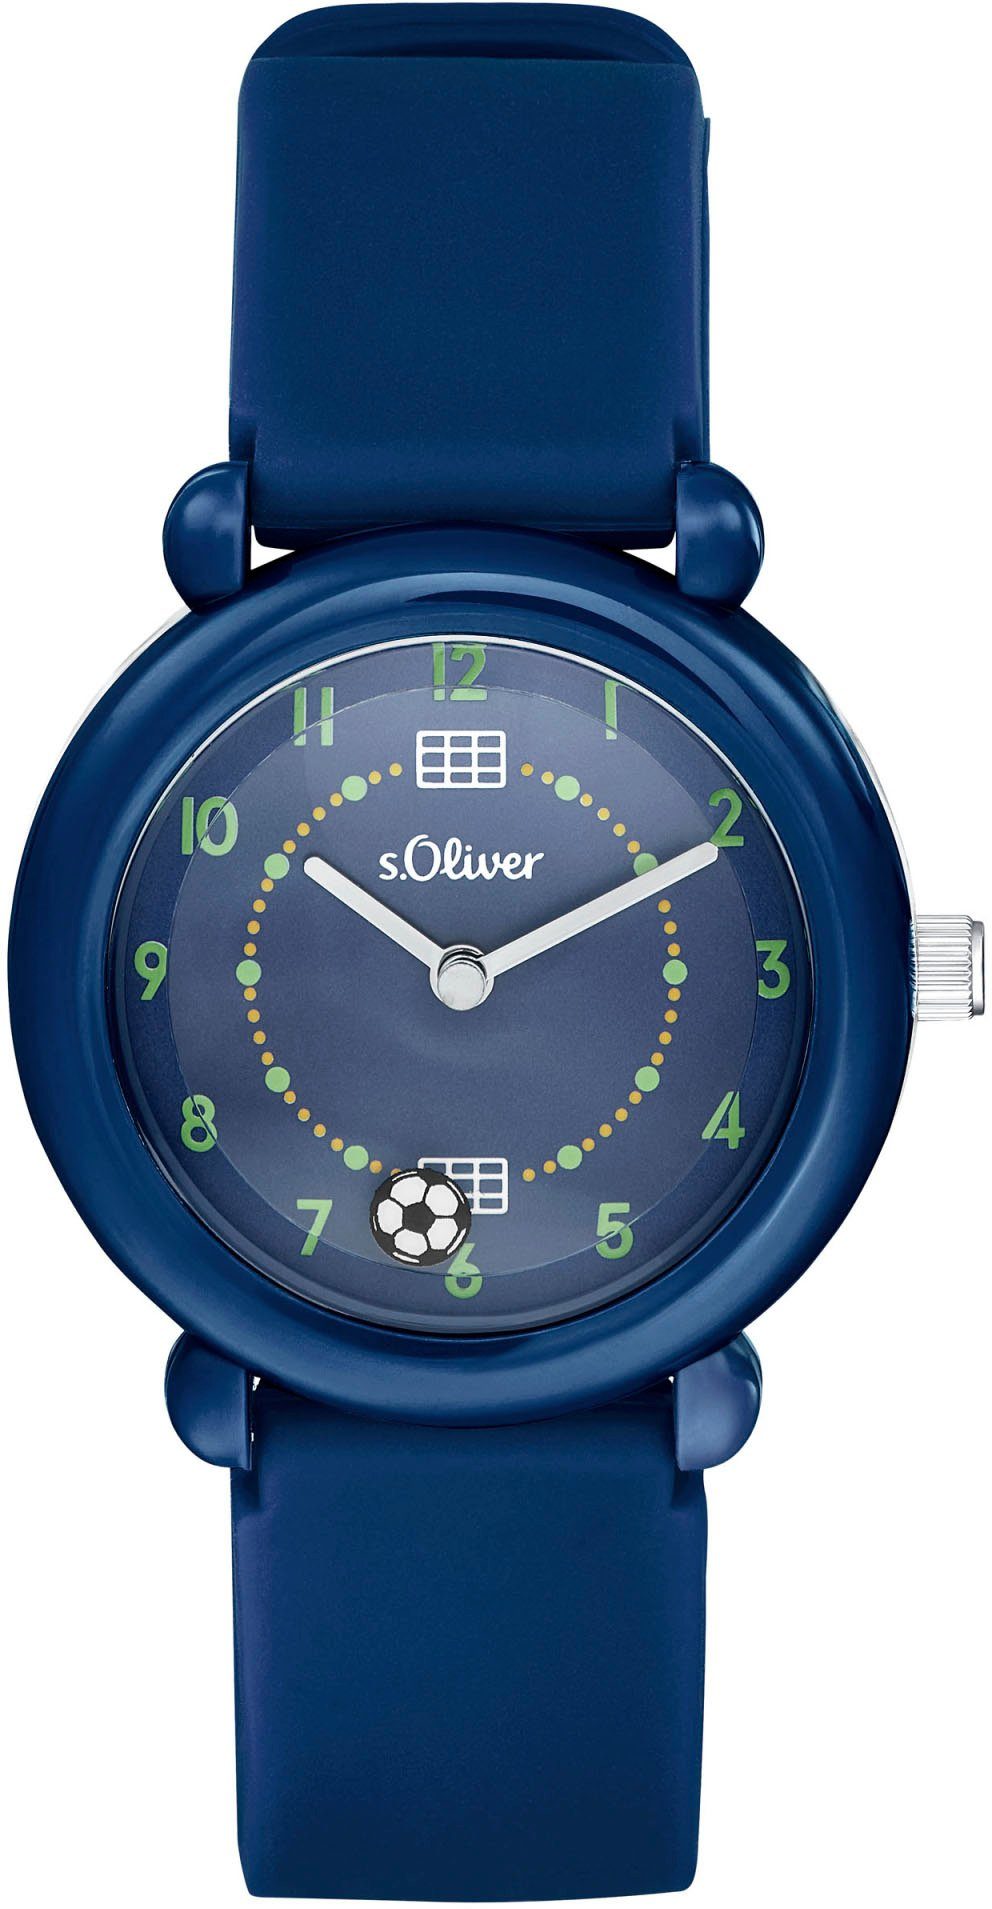 s.Oliver Quarzuhr 2036534, ideal Armbanduhr auch Geschenk, Trendige Jungen für als